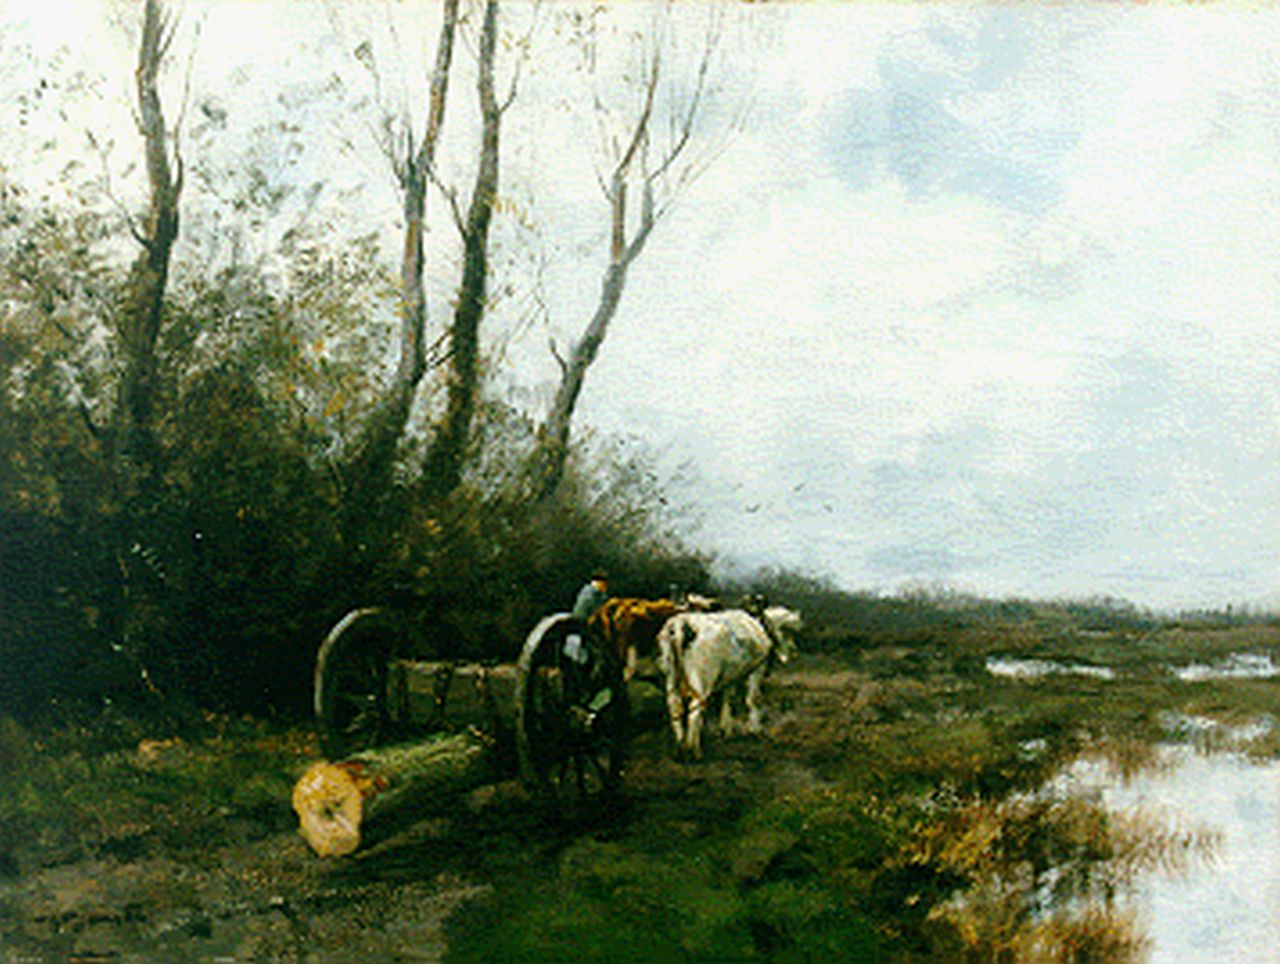 Jansen W.G.F.  | 'Willem' George Frederik Jansen, Mallejan op landweg, olieverf op doek 60,5 x 80,4 cm, gesigneerd linksonder